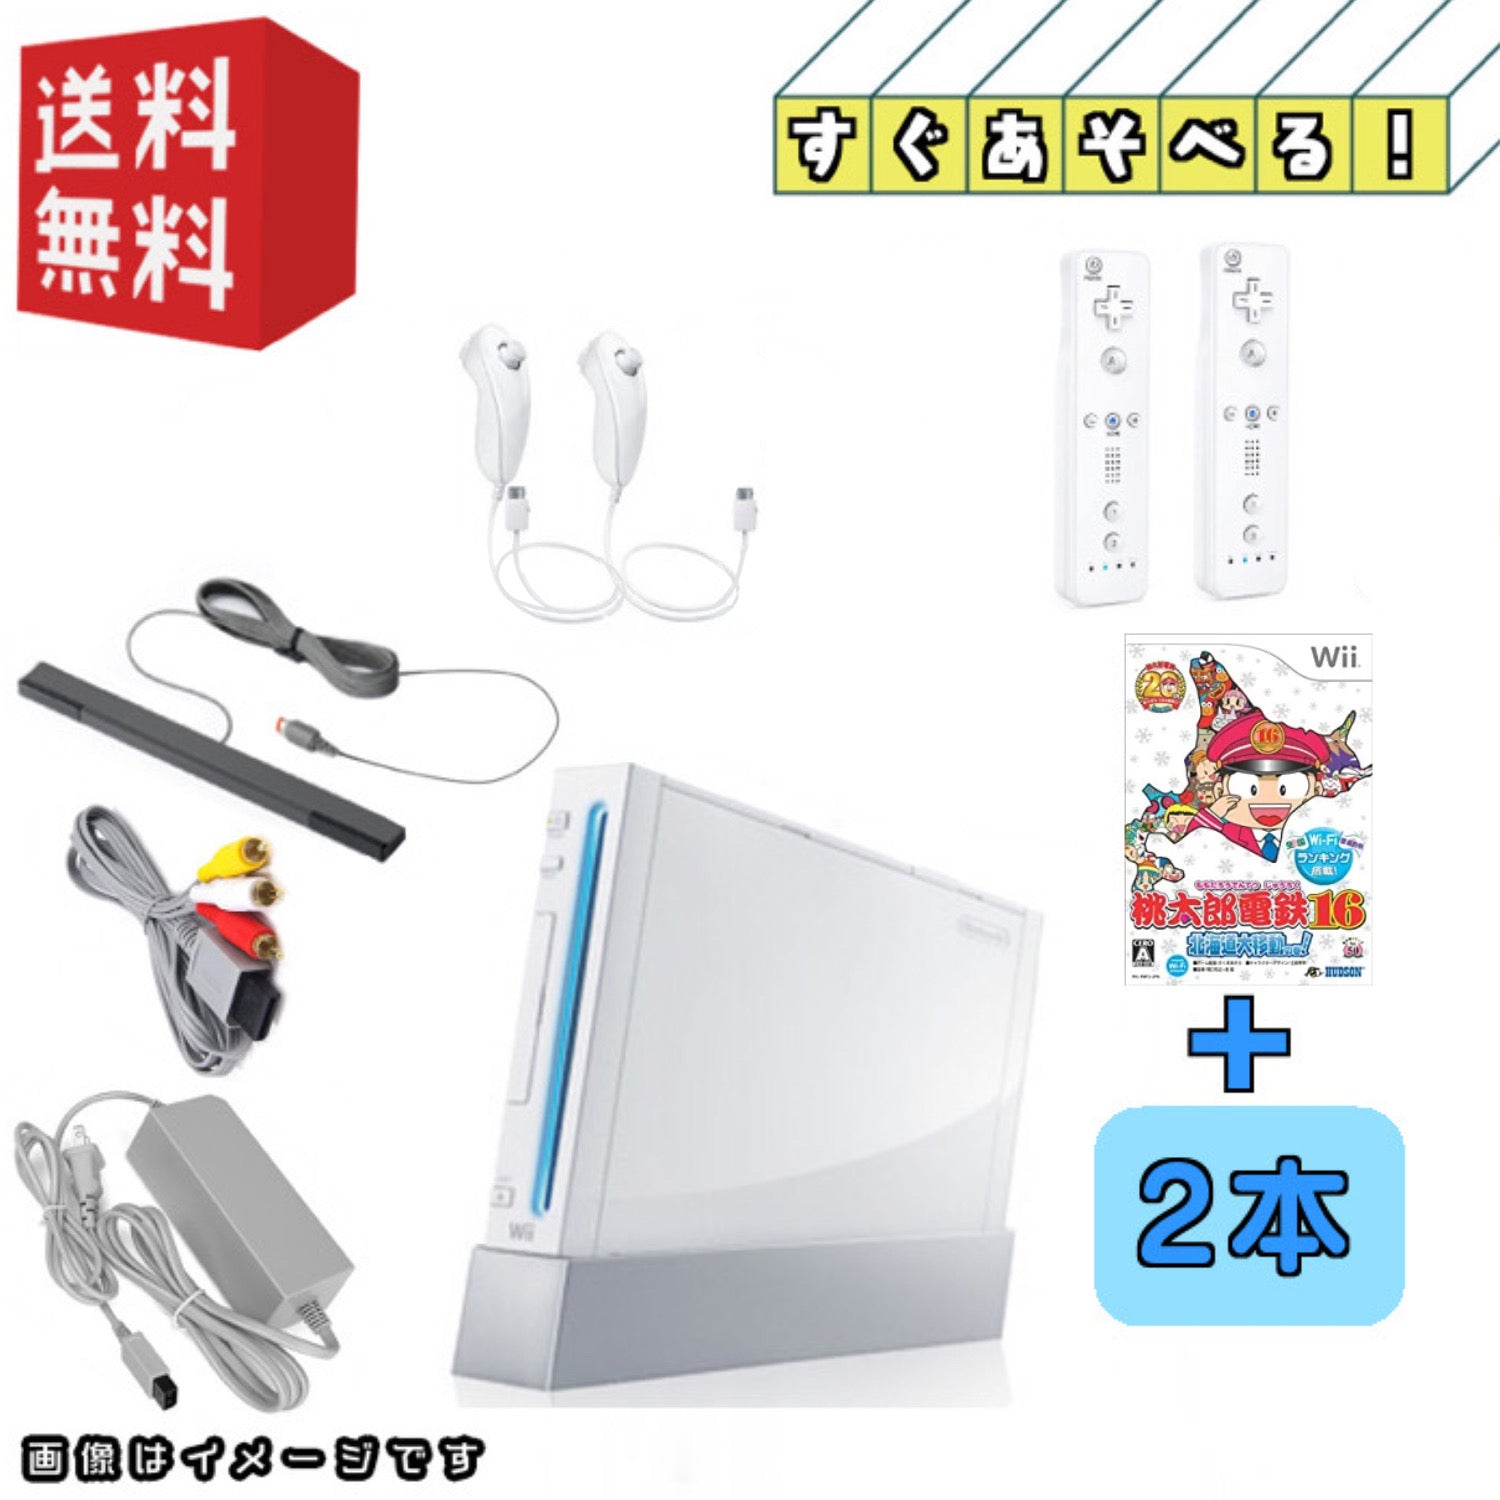 ☆すぐ遊べる Wii 本体 ゲーム ソフト セット 桃鉄 リモコン 2個